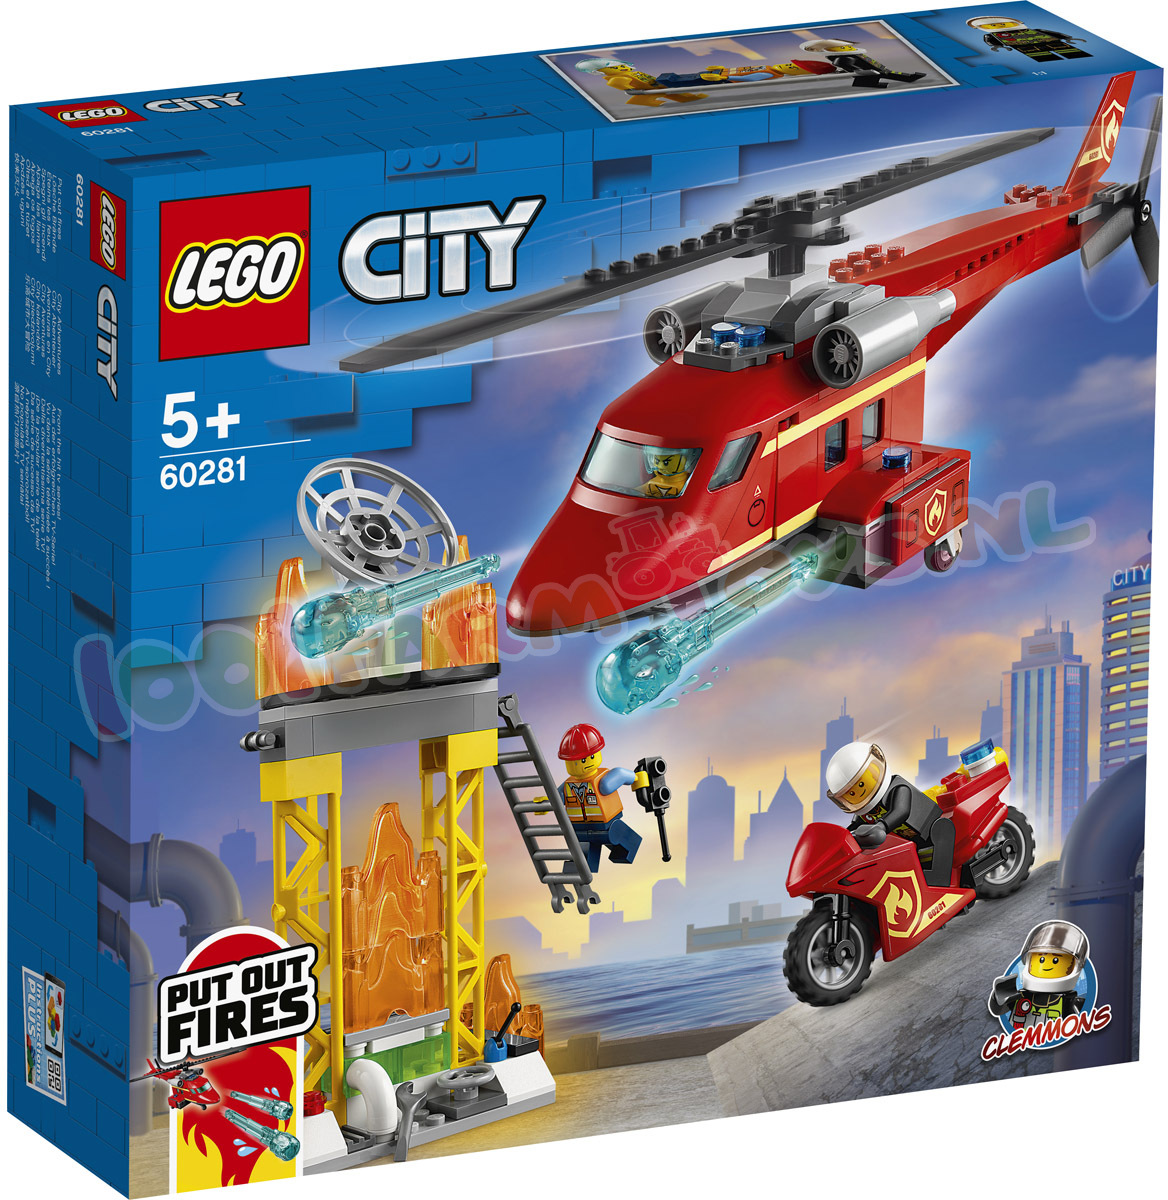 gordijn Antarctica Precies LEGO CITY Brandweer ReddingsHelikopter - 60281 - LEGO City - LEGO -  1001Farmtoys landbouwspeelgoed - LET OP dit product wordt niet meer  geproduceerd